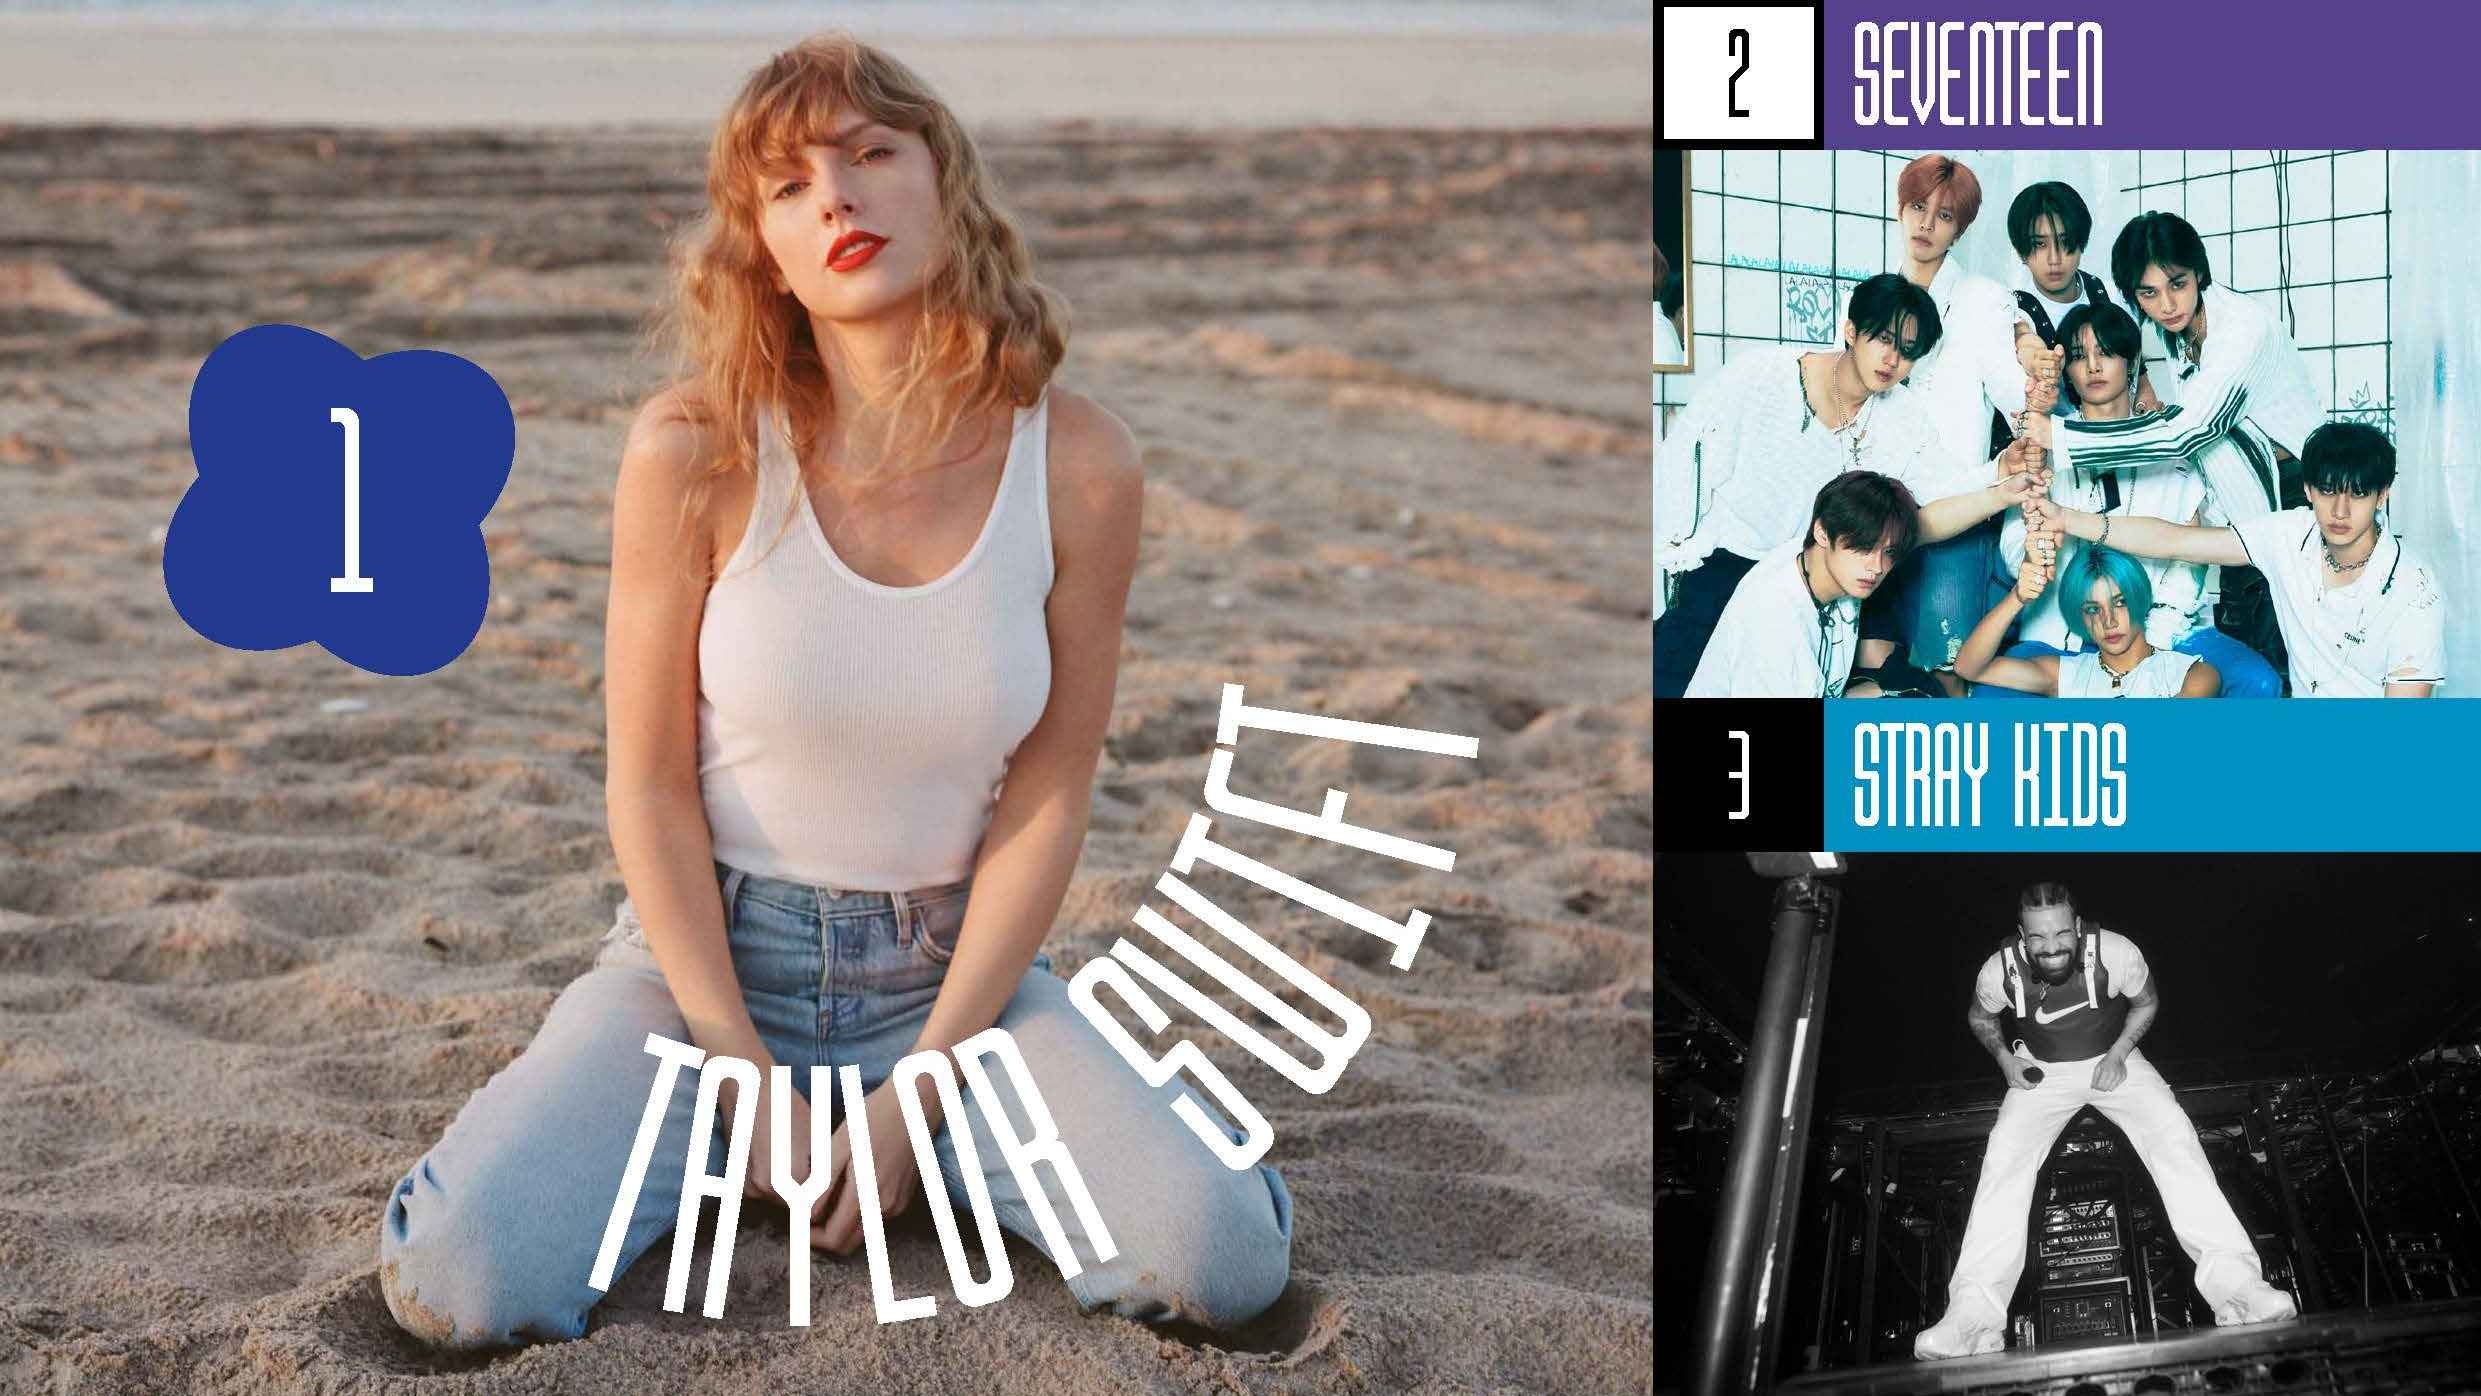 IFPI beschert Taylor Swift den nächsten Rekord